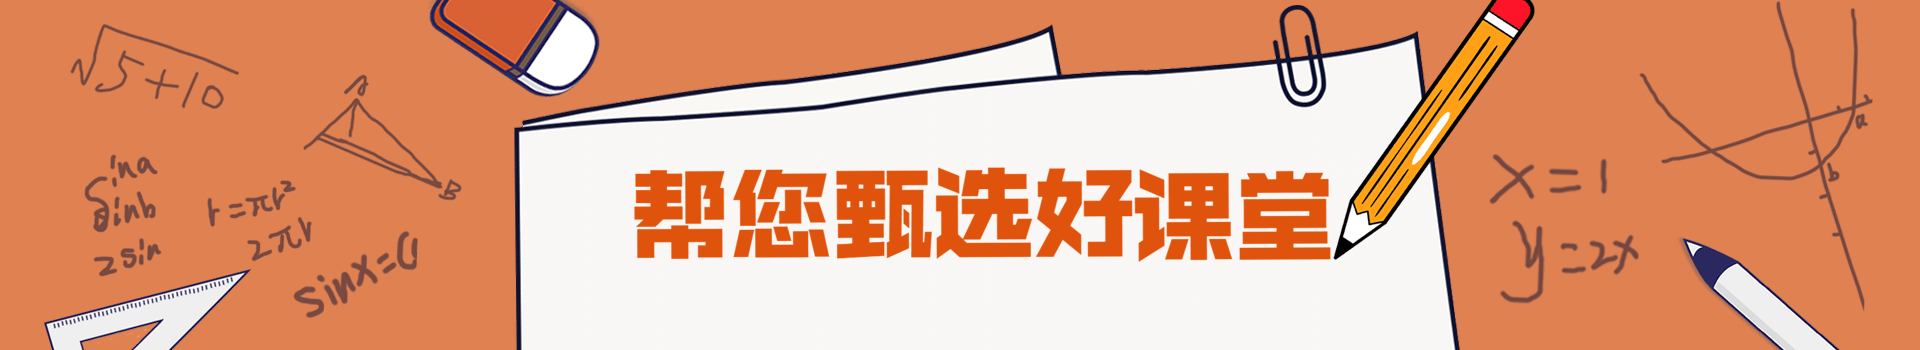 北京动漫设计专业培训班